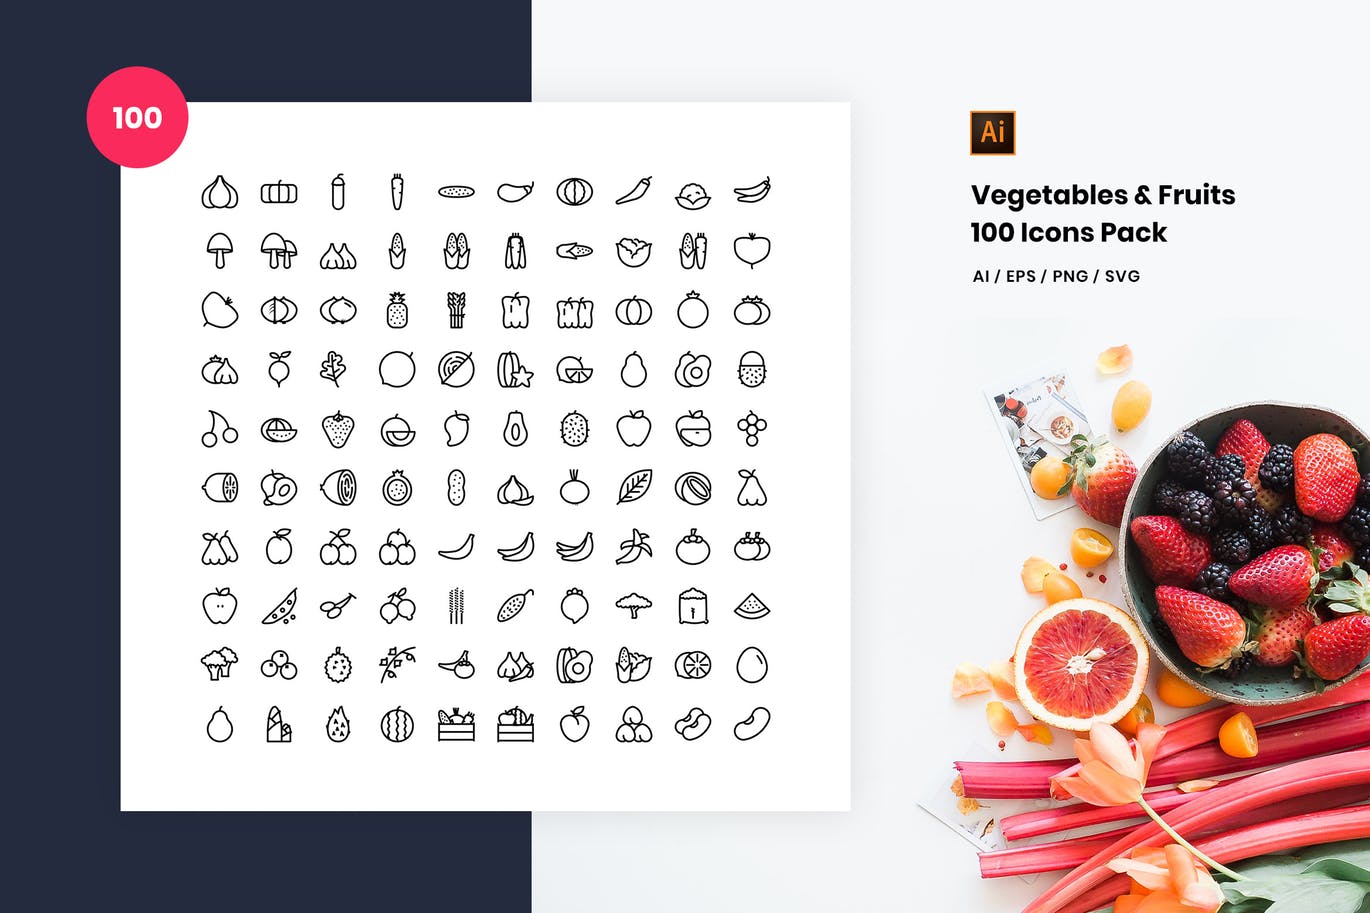 100枚蔬菜&水果主题矢量蚂蚁素材精选图标 Vegetables and Fruits 100 Icon Pack插图